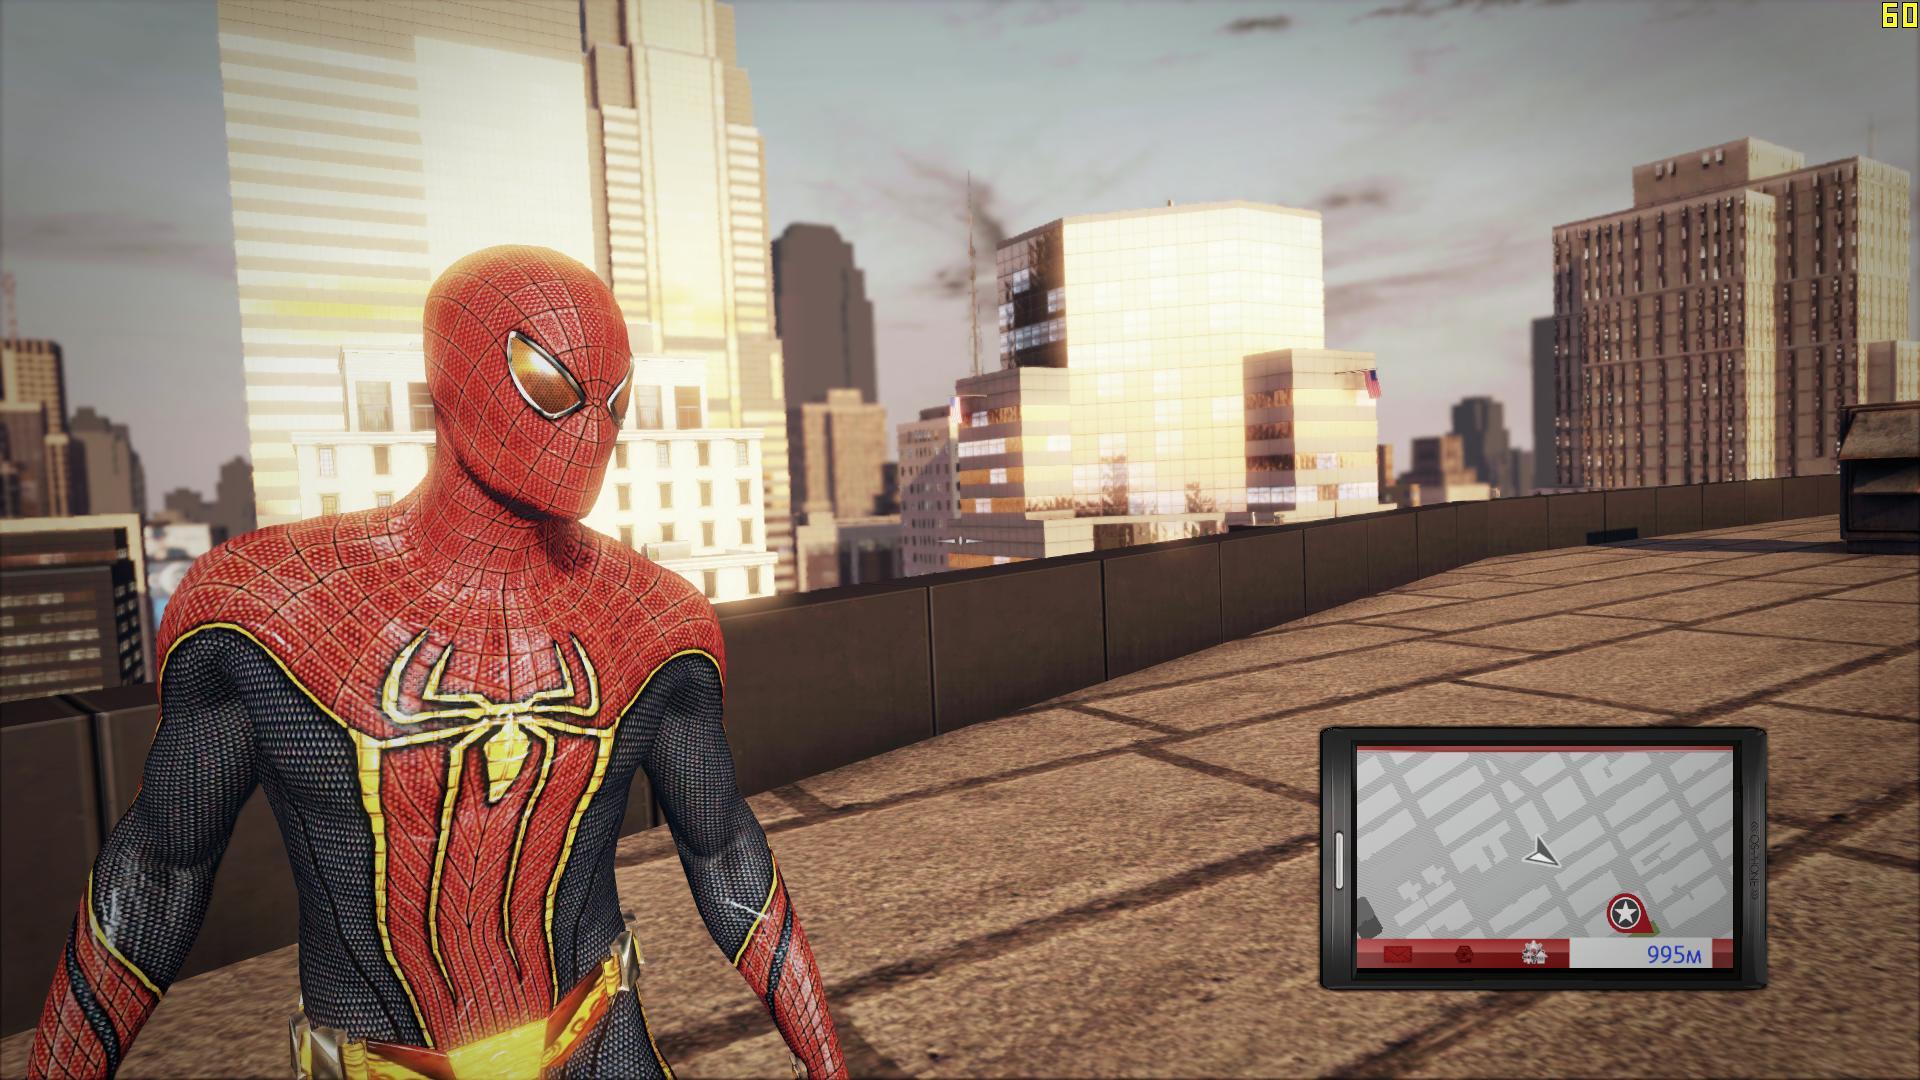 Игру новый человек паук 1. The amazing Spider-man игра. Новый человек паук игра. The amazing Spider man игра 2012 костюмы. Игра новый человек паук 1 костюмы.